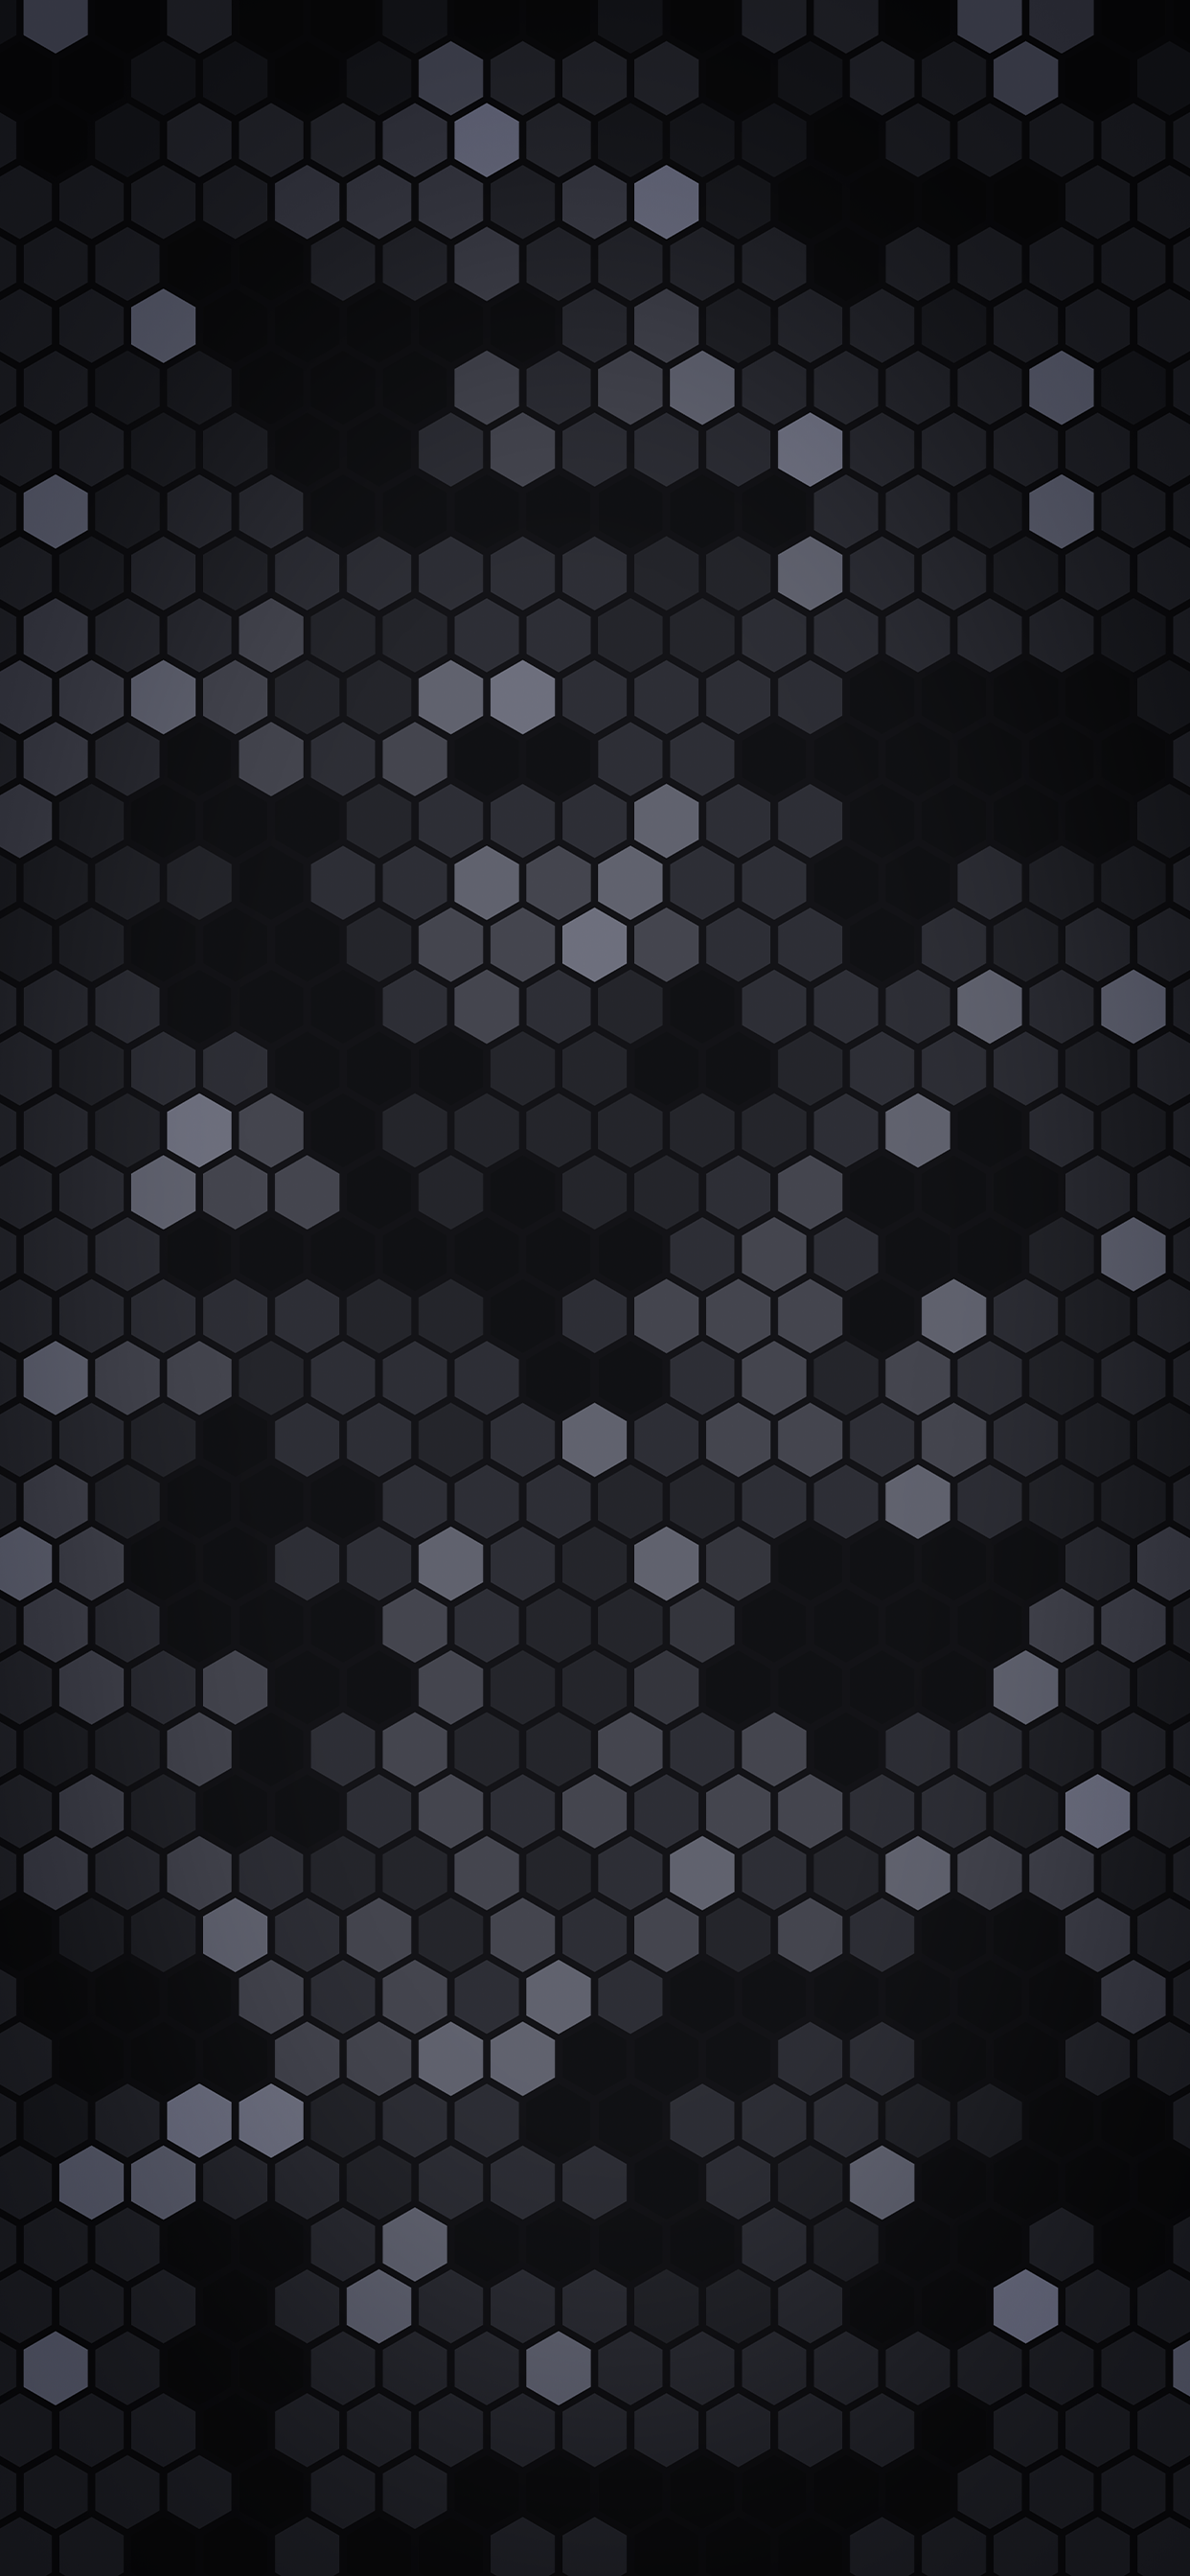 Dark pattern wallpaper for iPhoneidownloadblog.com